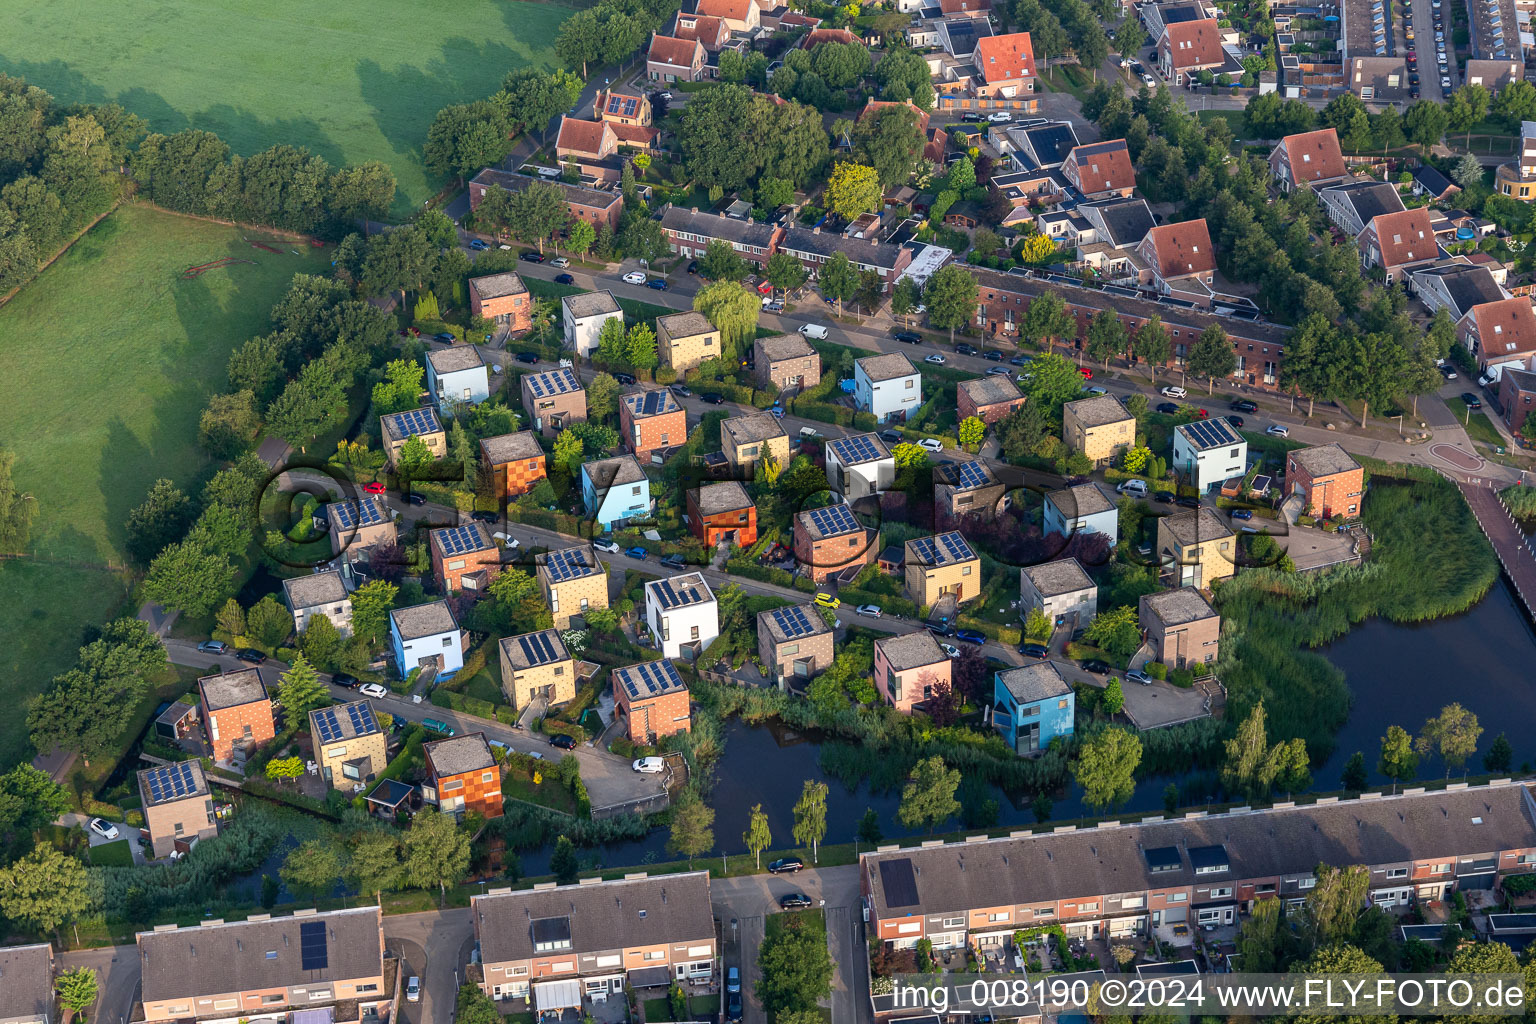 Luftbild von Wohngebiet mit bunten, kubusförmigen Design Einfamilienhäusern in einer Einfamilienhaussiedlung im Grünen am Wasser in Enschede in Overijssel, Niederlande